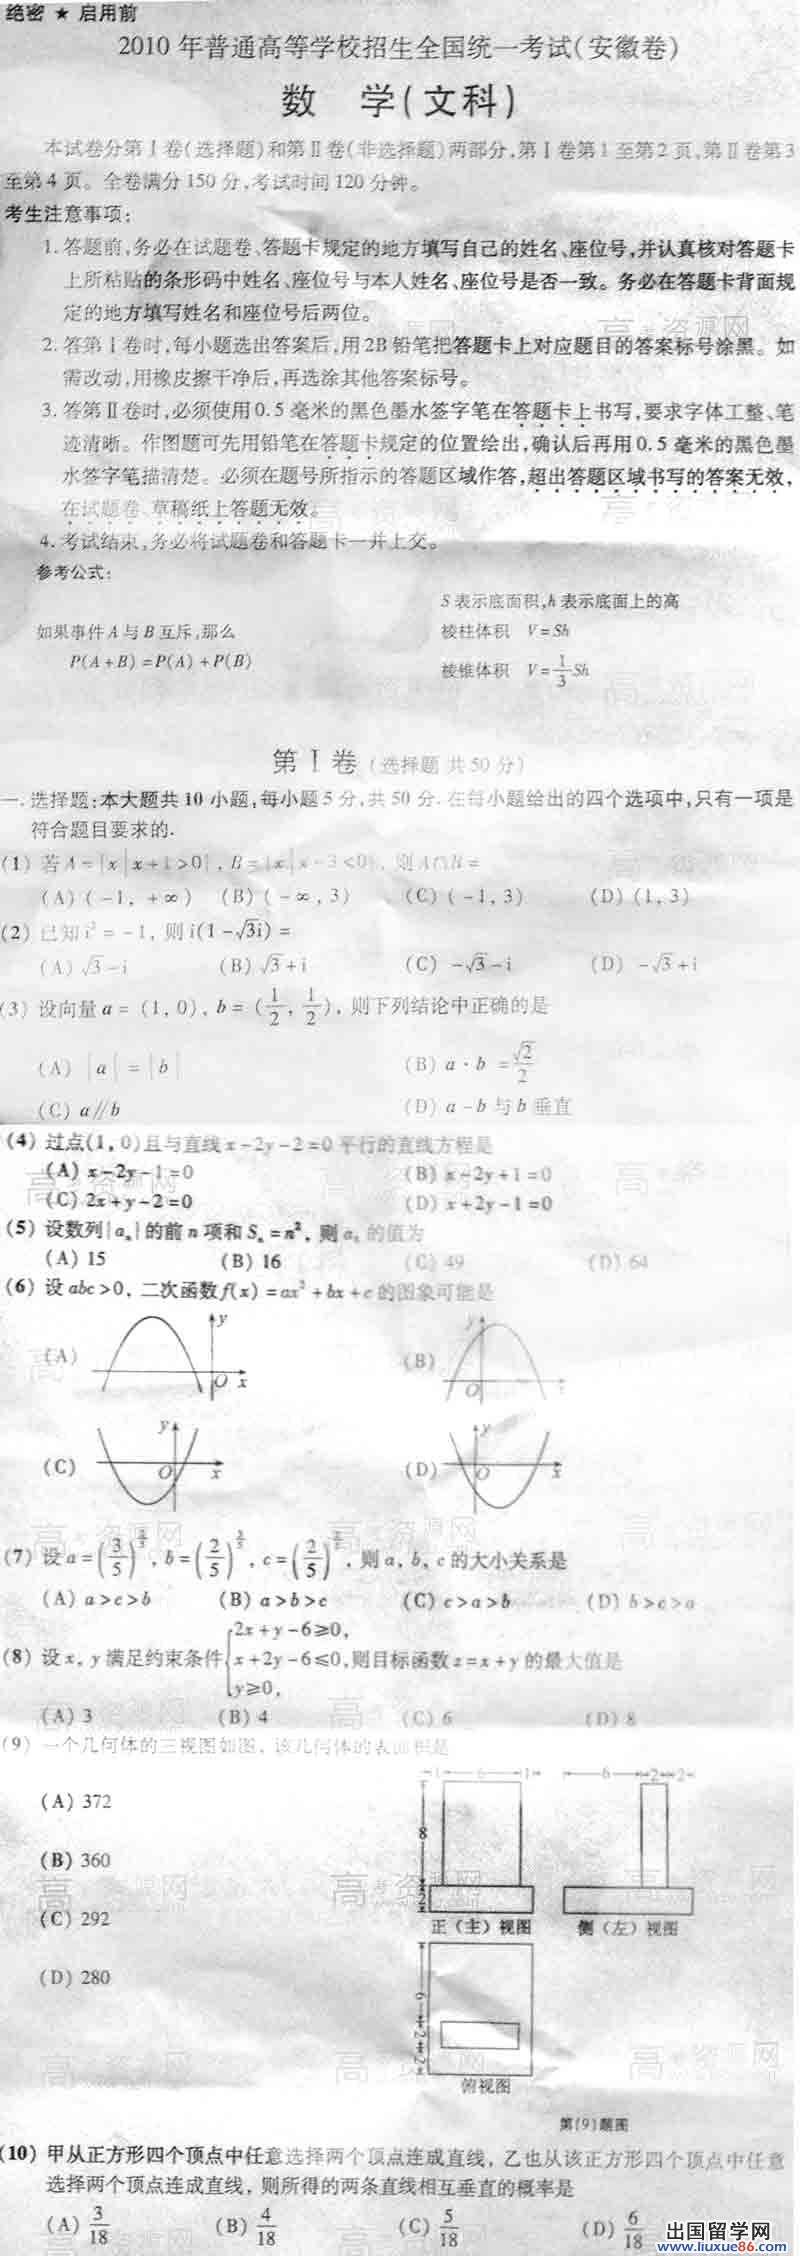 2010年安徽省普通高考招生數學文真題試卷